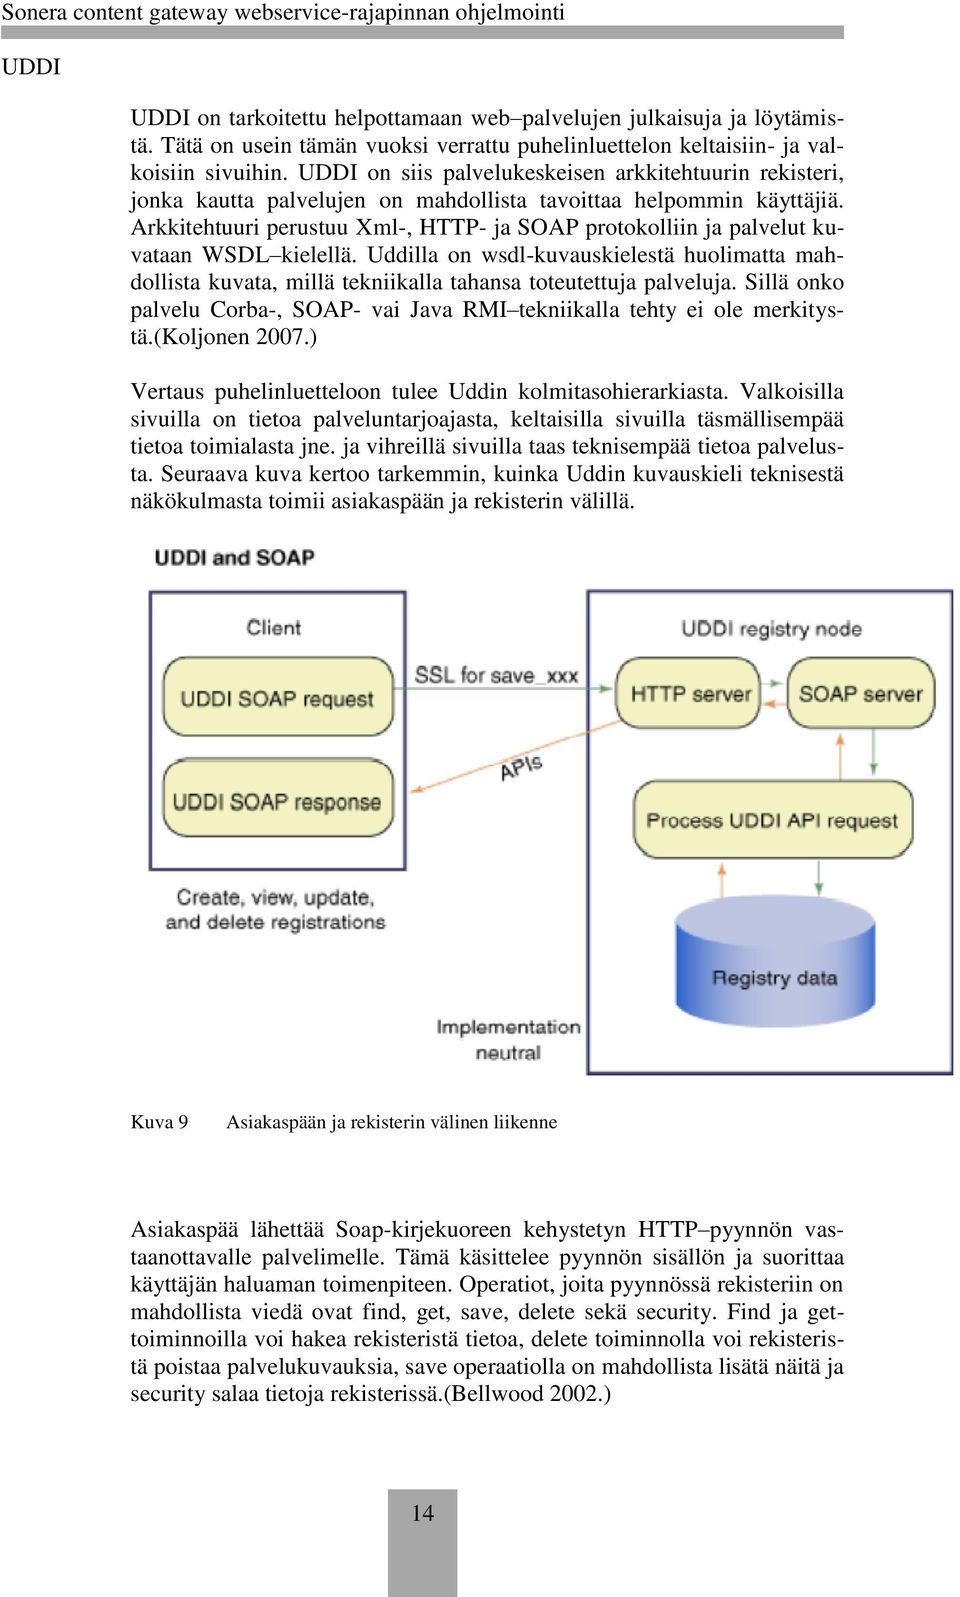 Arkkitehtuuri perustuu Xml-, HTTP- ja SOAP protokolliin ja palvelut kuvataan WSDL kielellä.